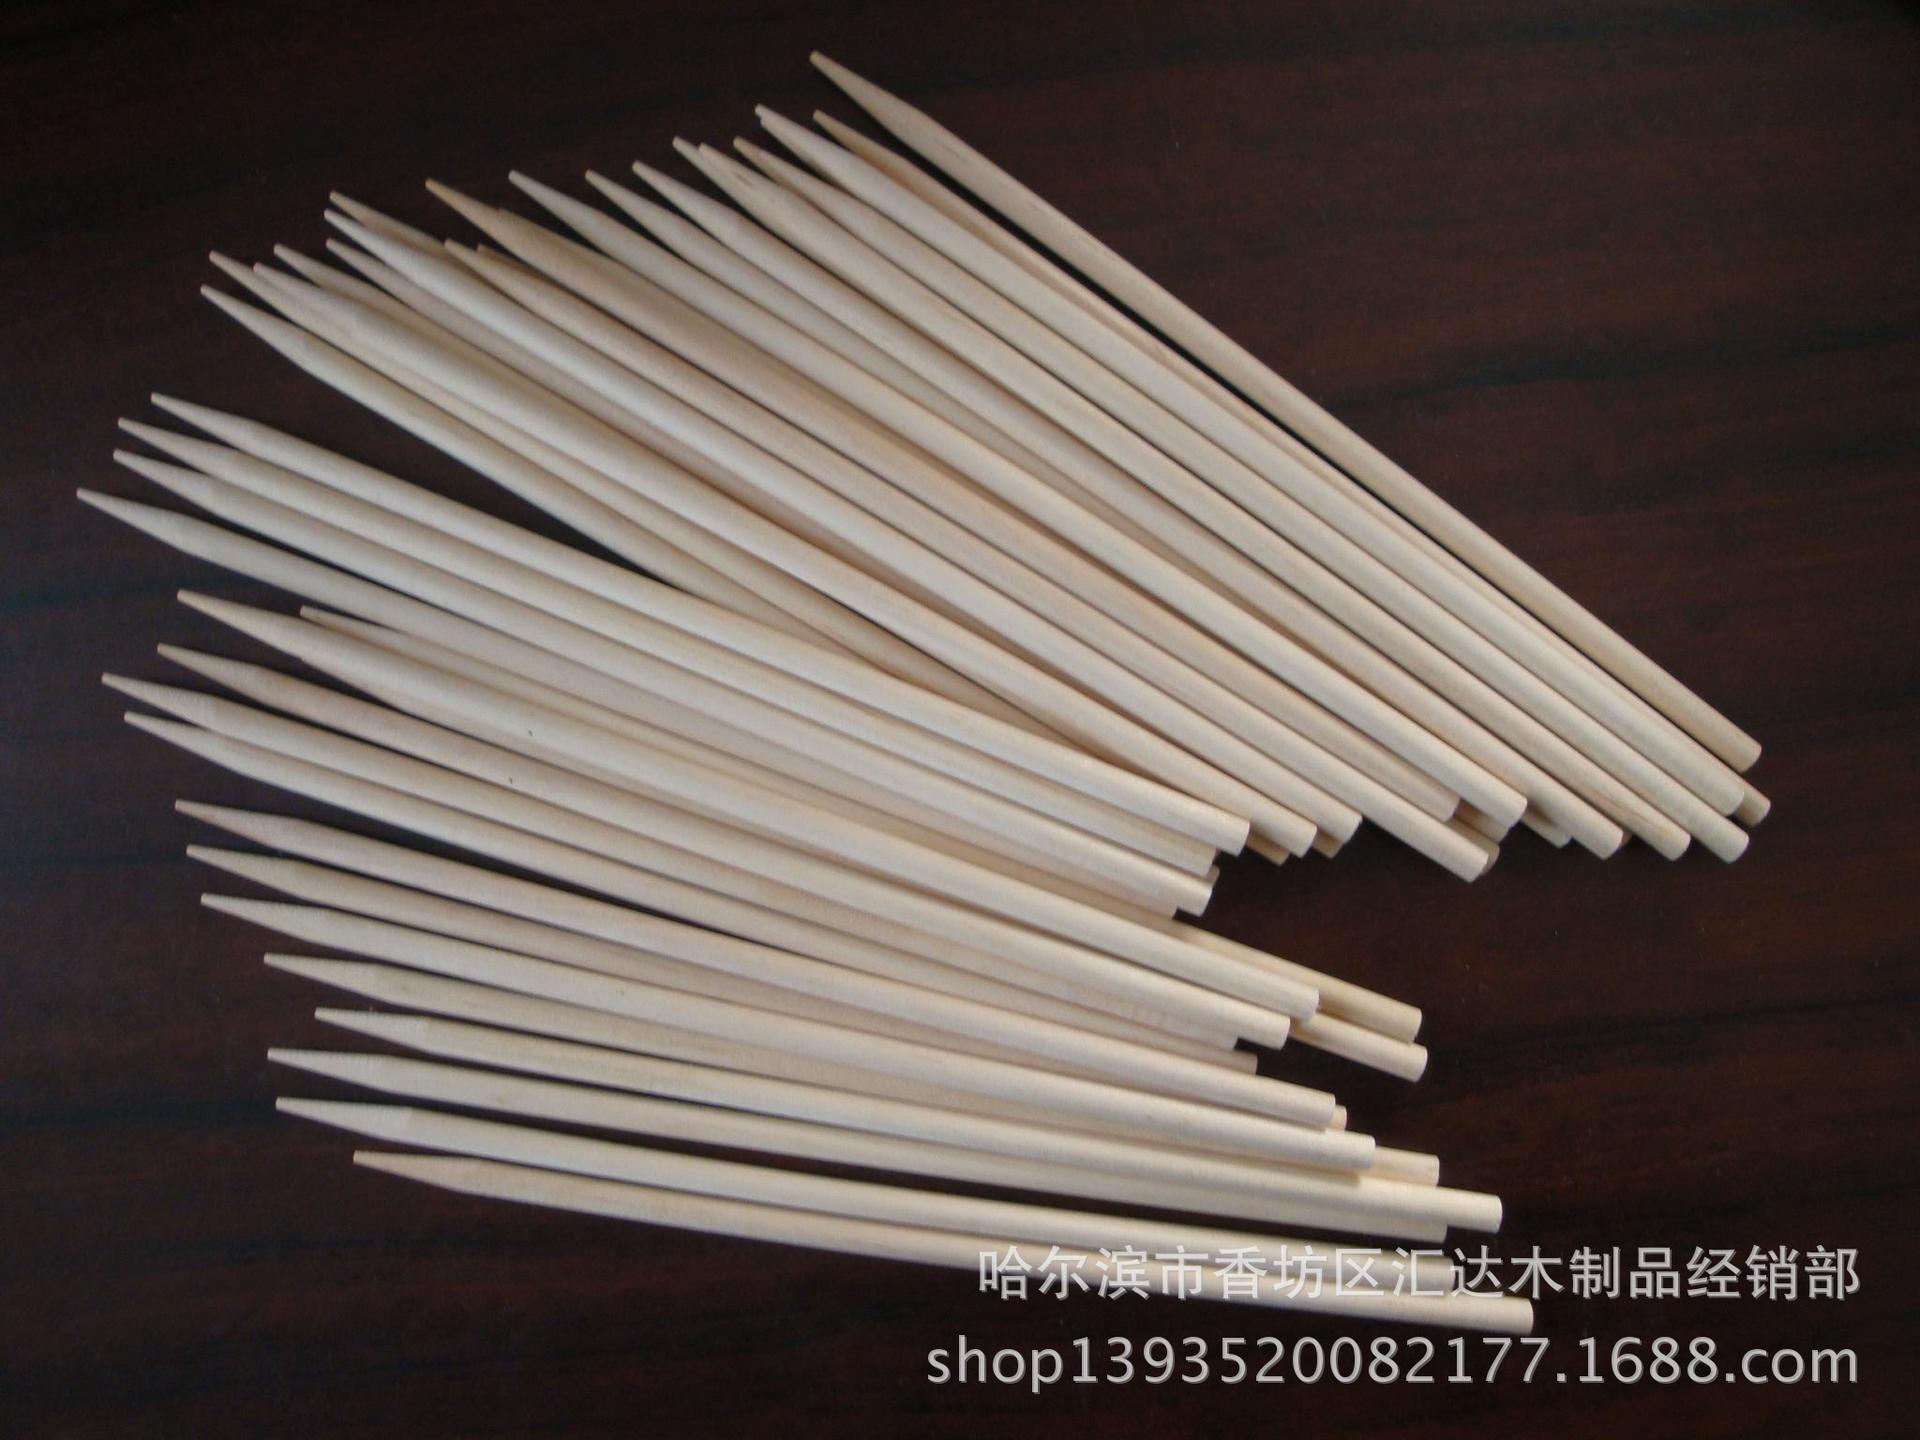 厂家供应棒糖棒 木质棒糖棒 环保磨尖棒糖棒 一次性棒糖棒示例图6